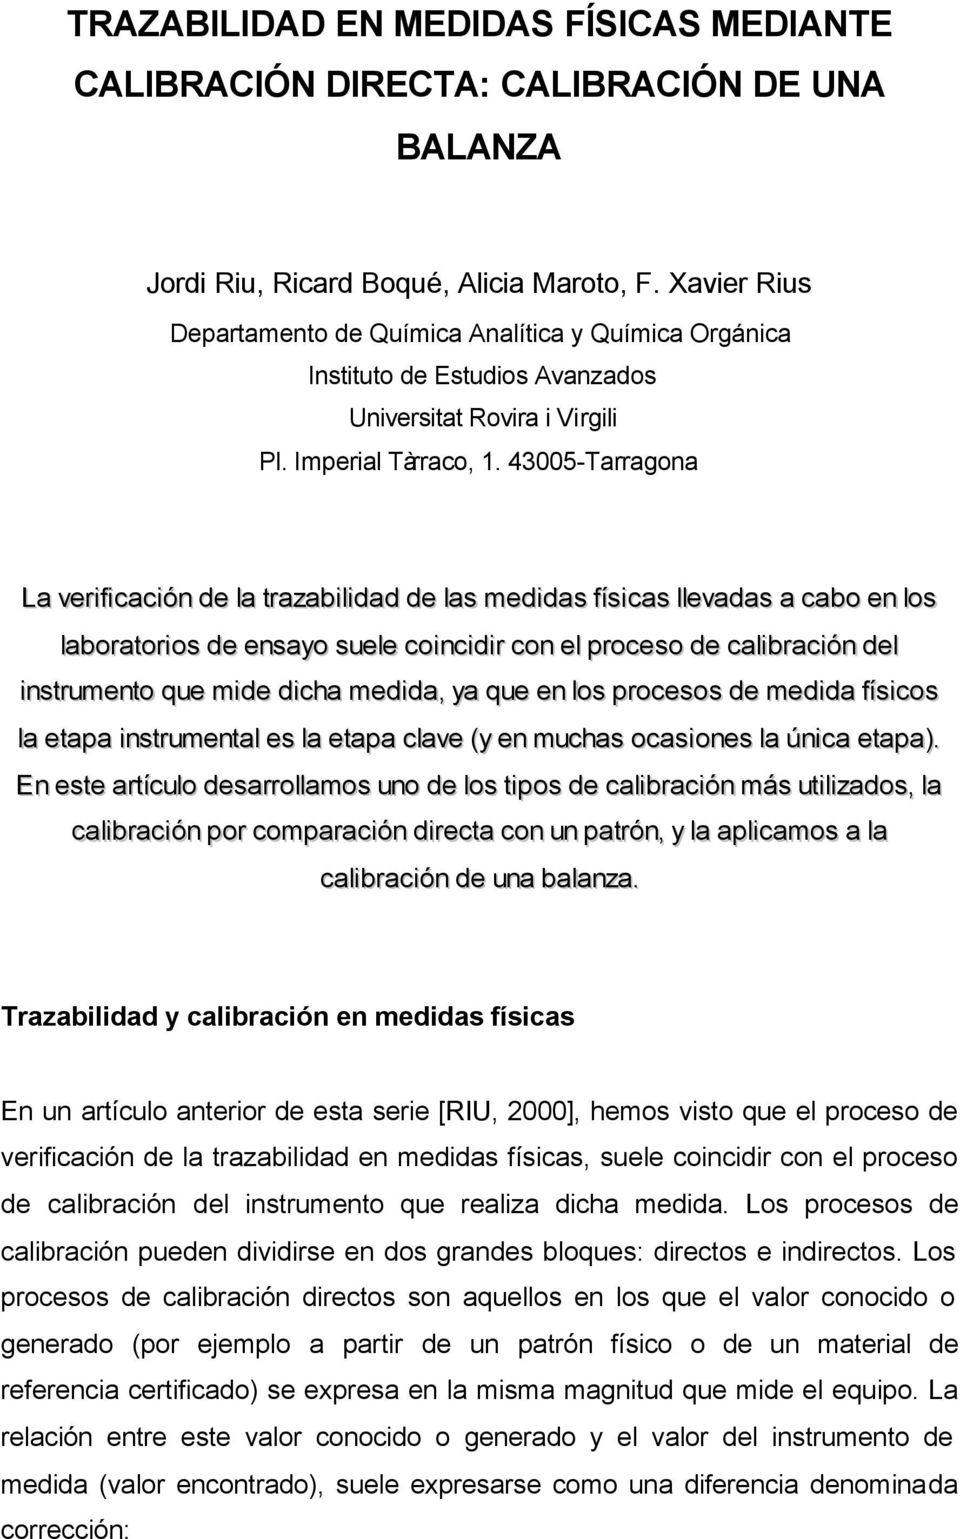 43005-Tarragona La verificación de la trazabilidad de las medidas físicas llevadas a cabo en los laboratorios de ensayo suele coincidir con el proceso de calibración del instrumento que mide dicha